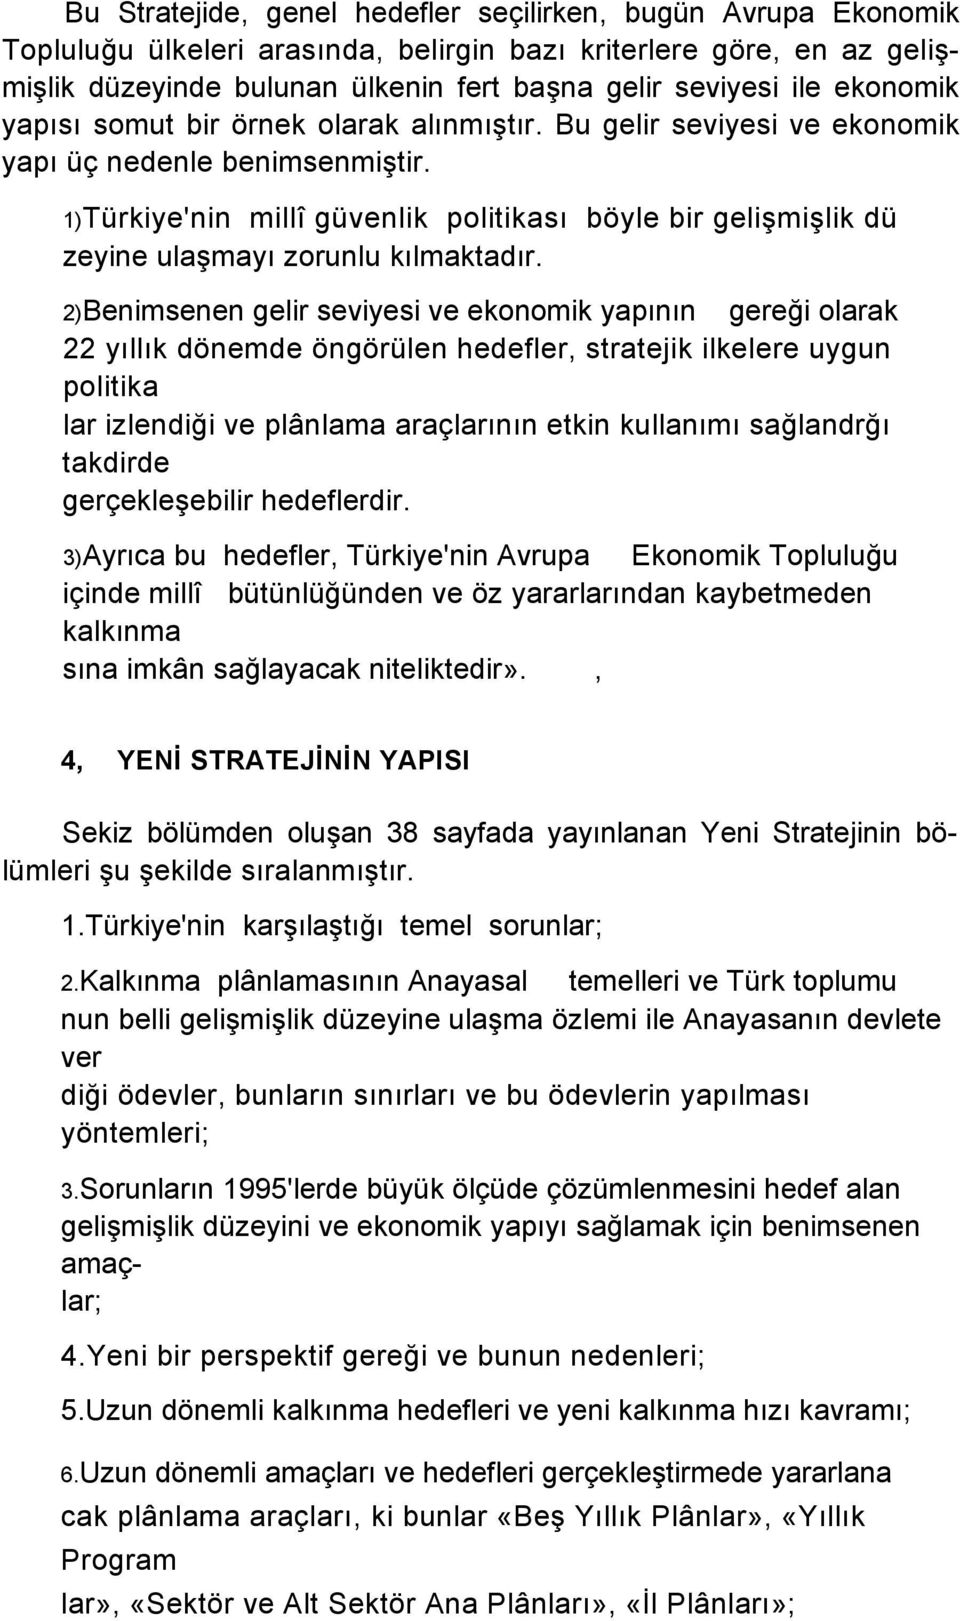 1)Türkiye'nin millî güvenlik politikası böyle bir gelişmişlik dü zeyine ulaşmayı zorunlu kılmaktadır.